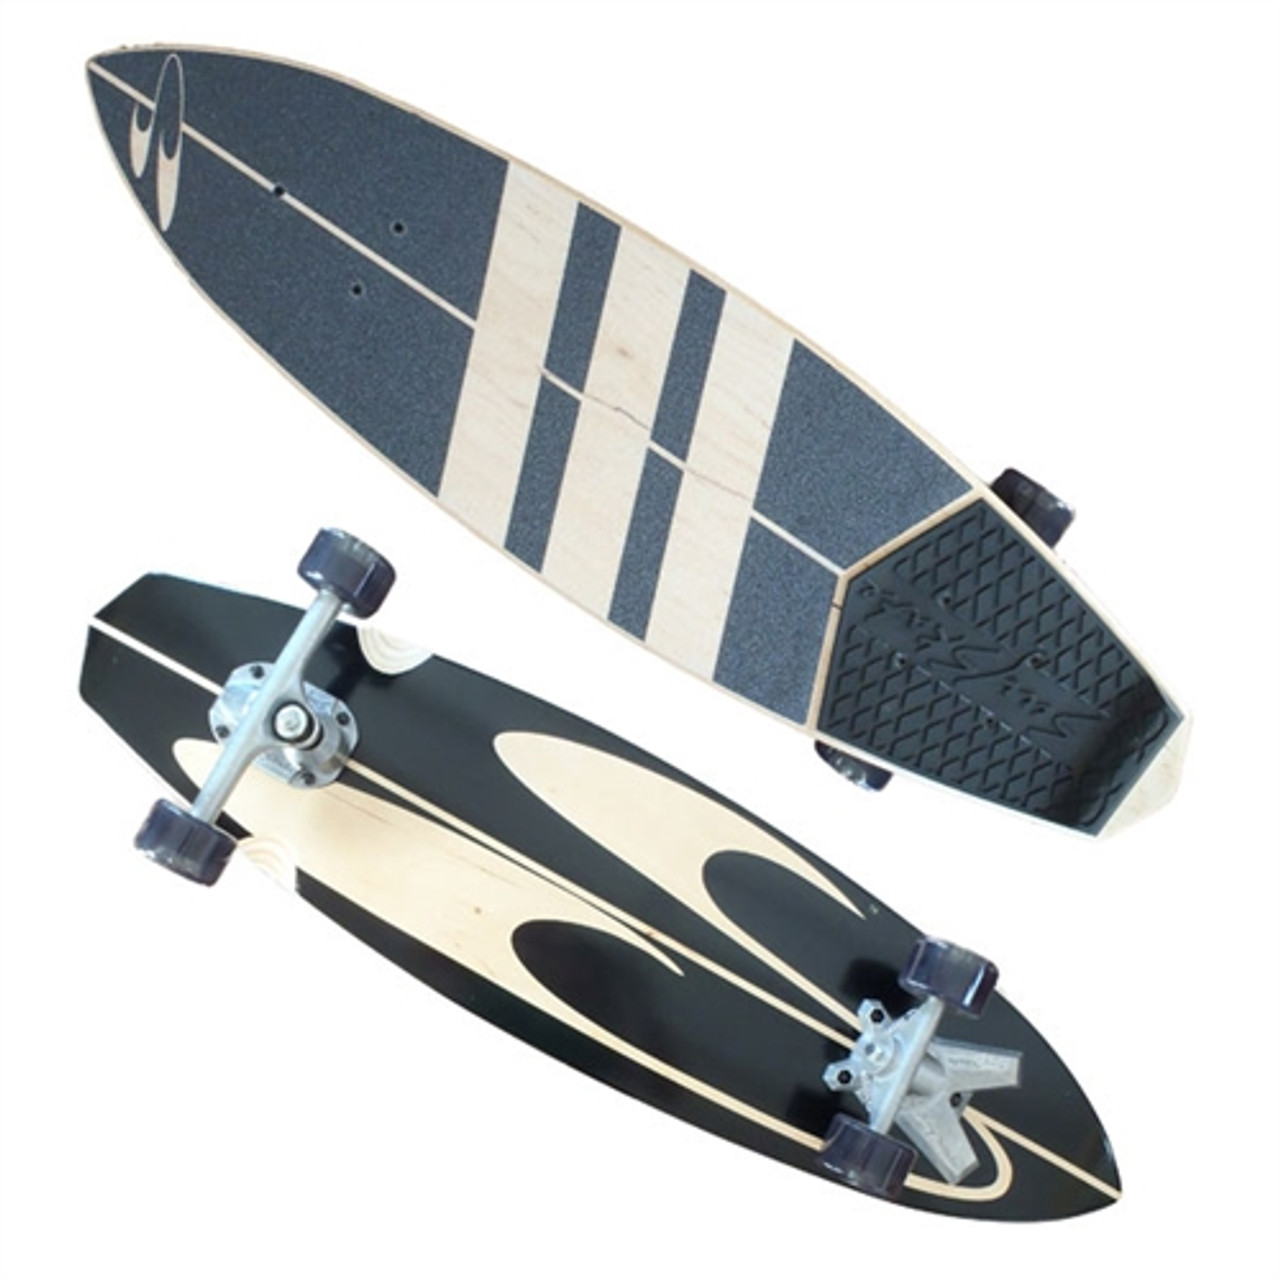 SurfSkate Stunner Blackout Longboard Vtrucks Black 36x9.5